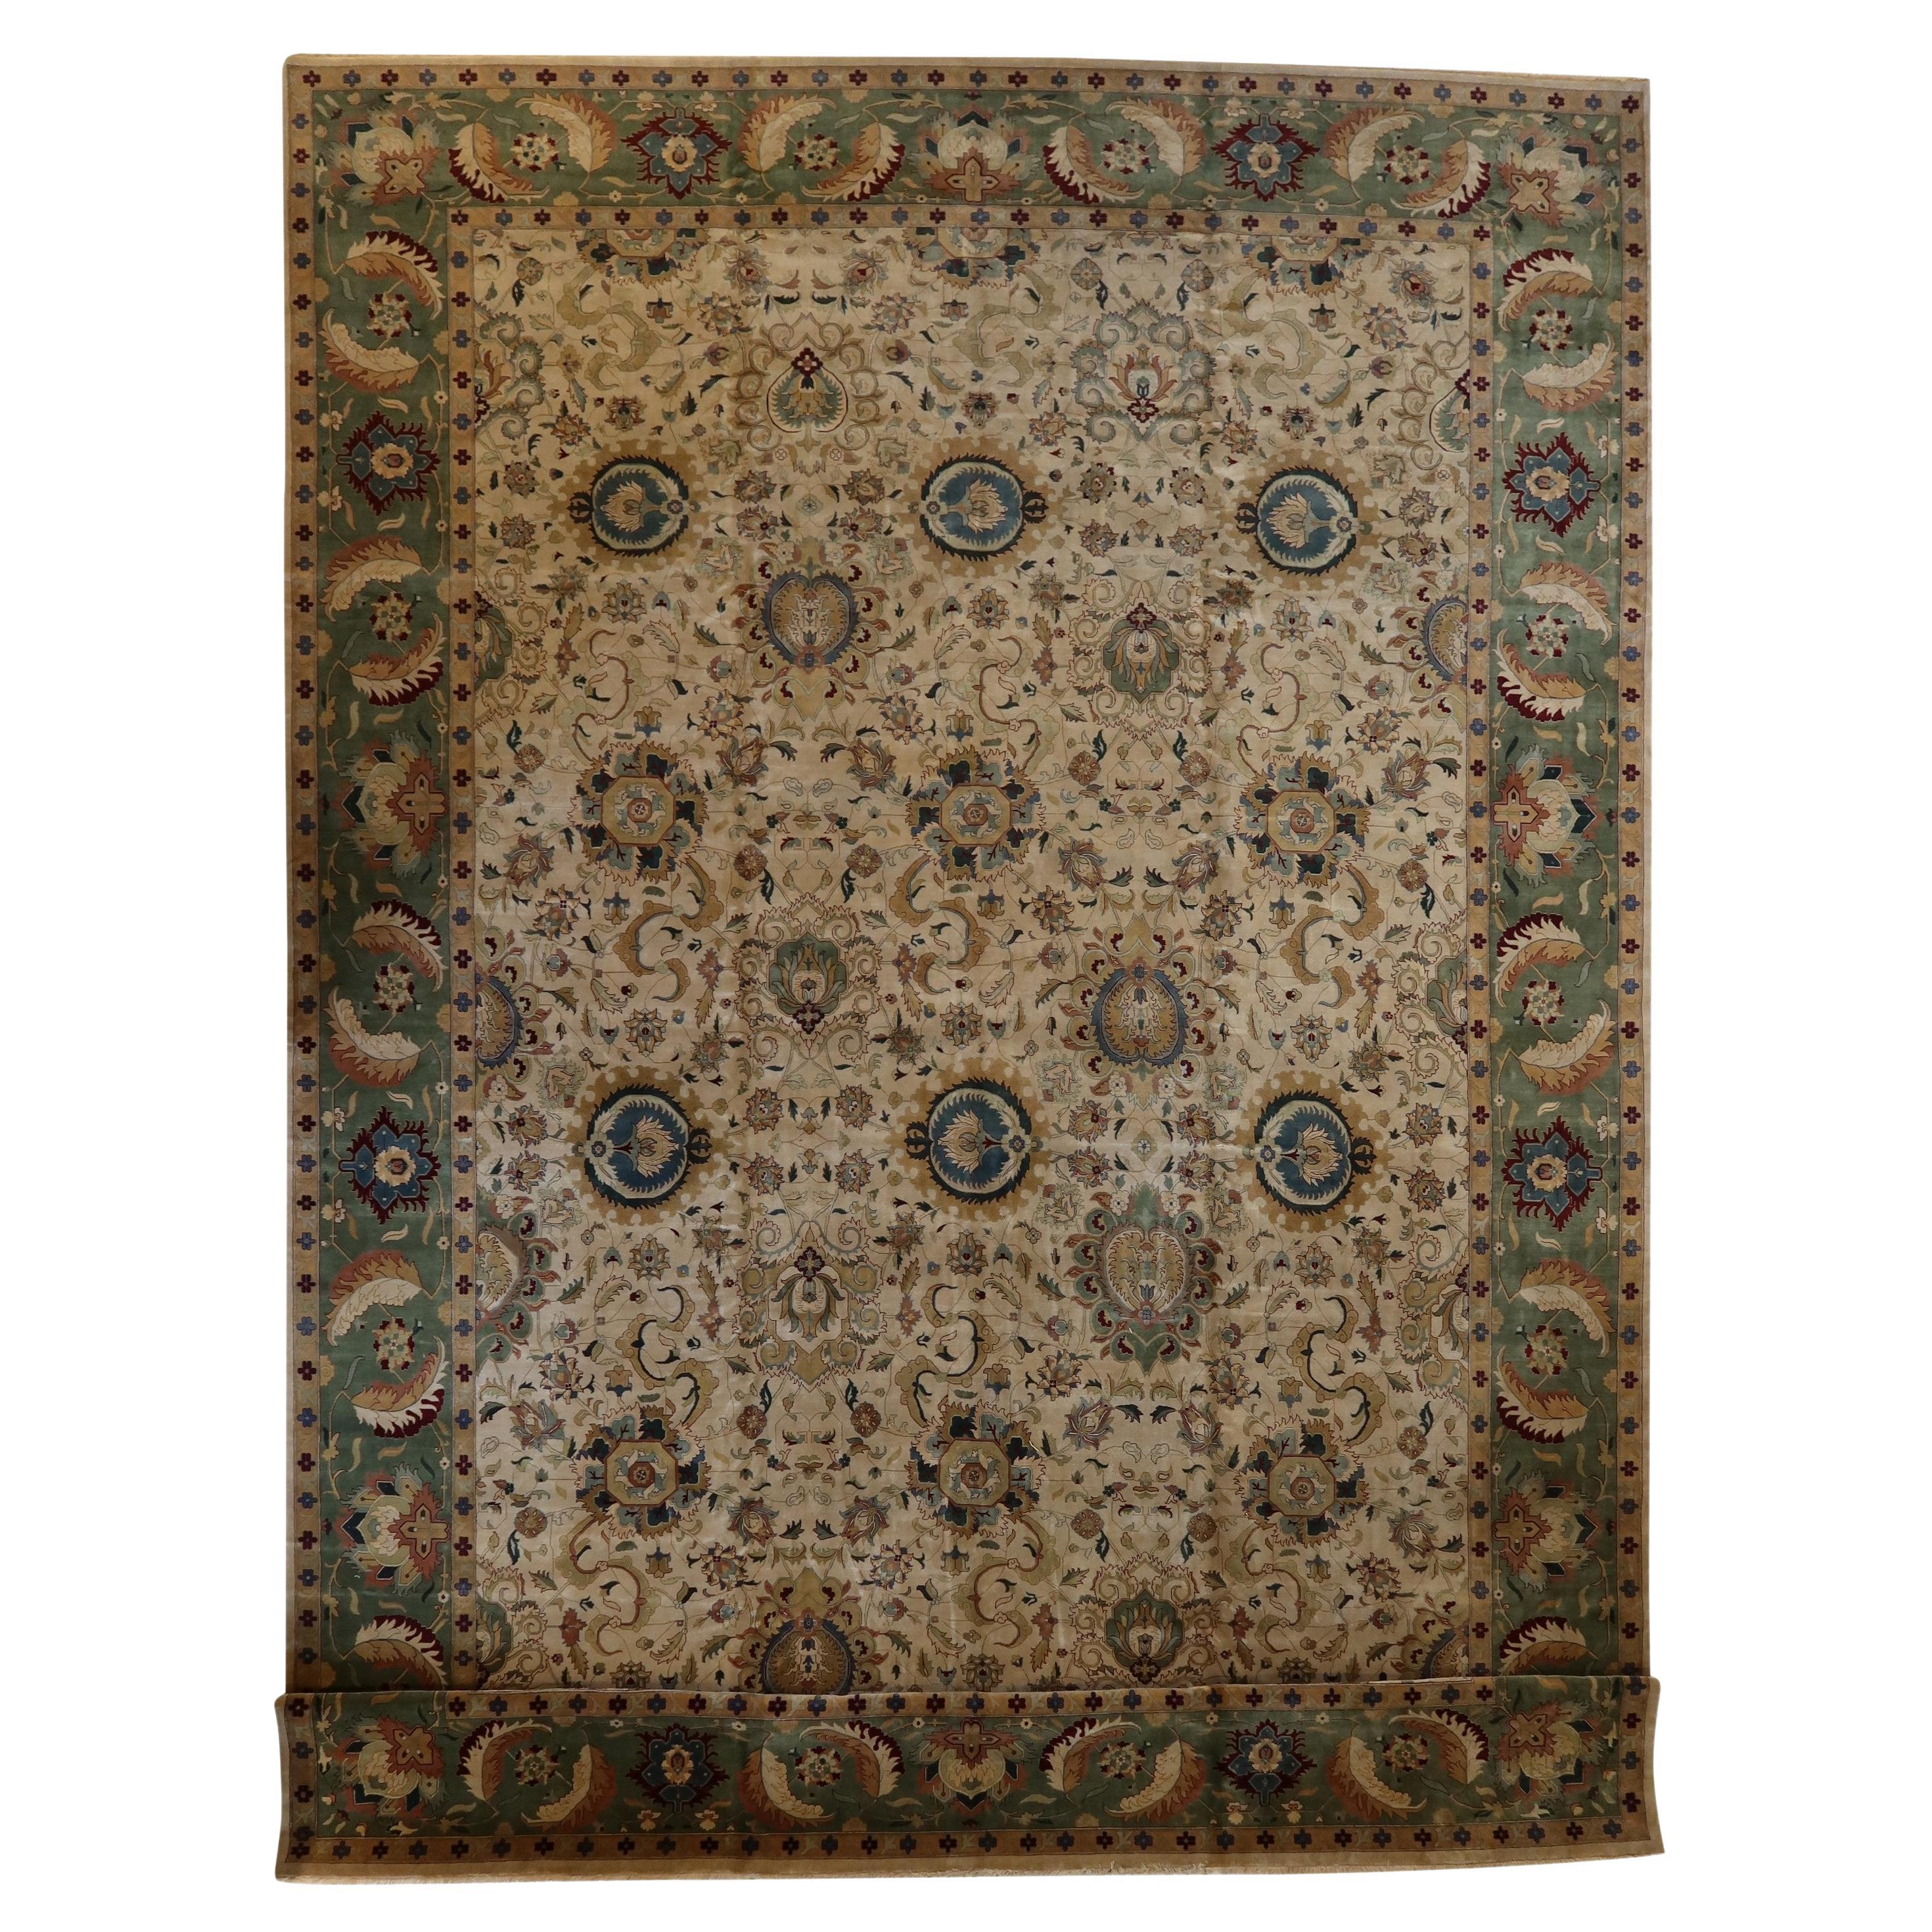 Agra, handgeknüpfter Vintage-Oversize-Teppich aus neuseeländischer Wolle in Elfenbeingrün, fein gewebt